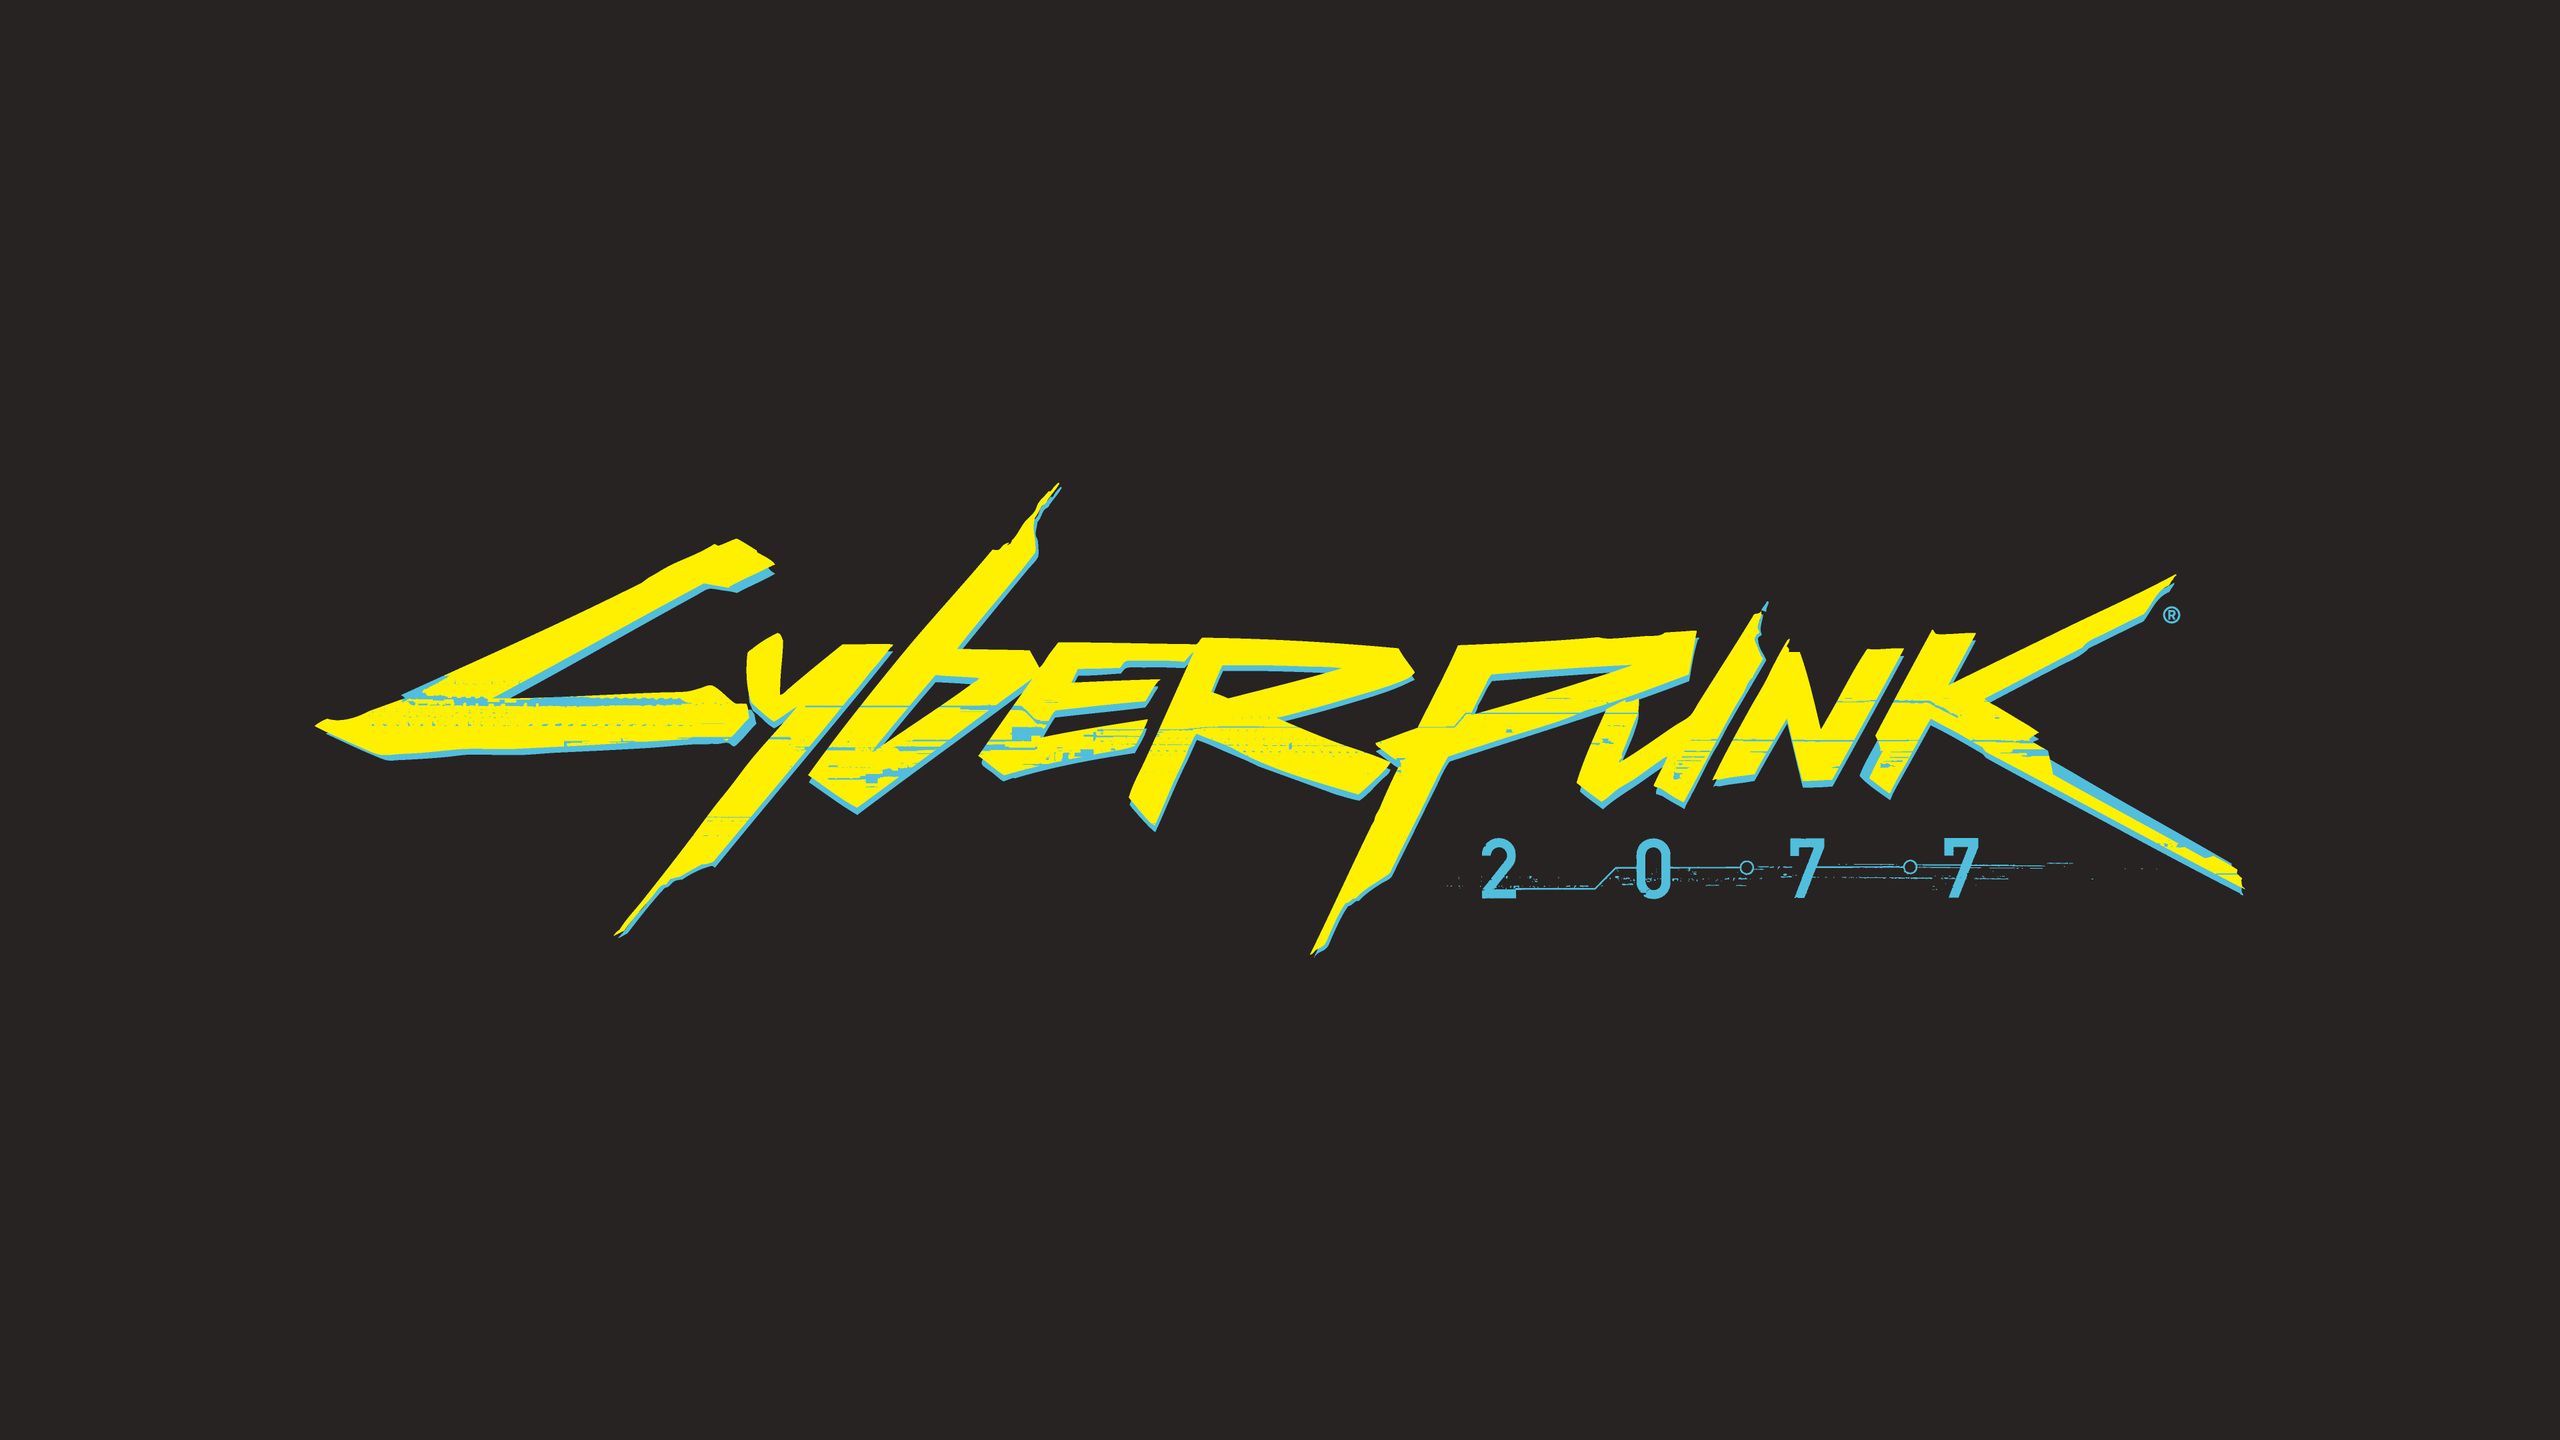 Cyberpunk Logo Wallpaper Top Background